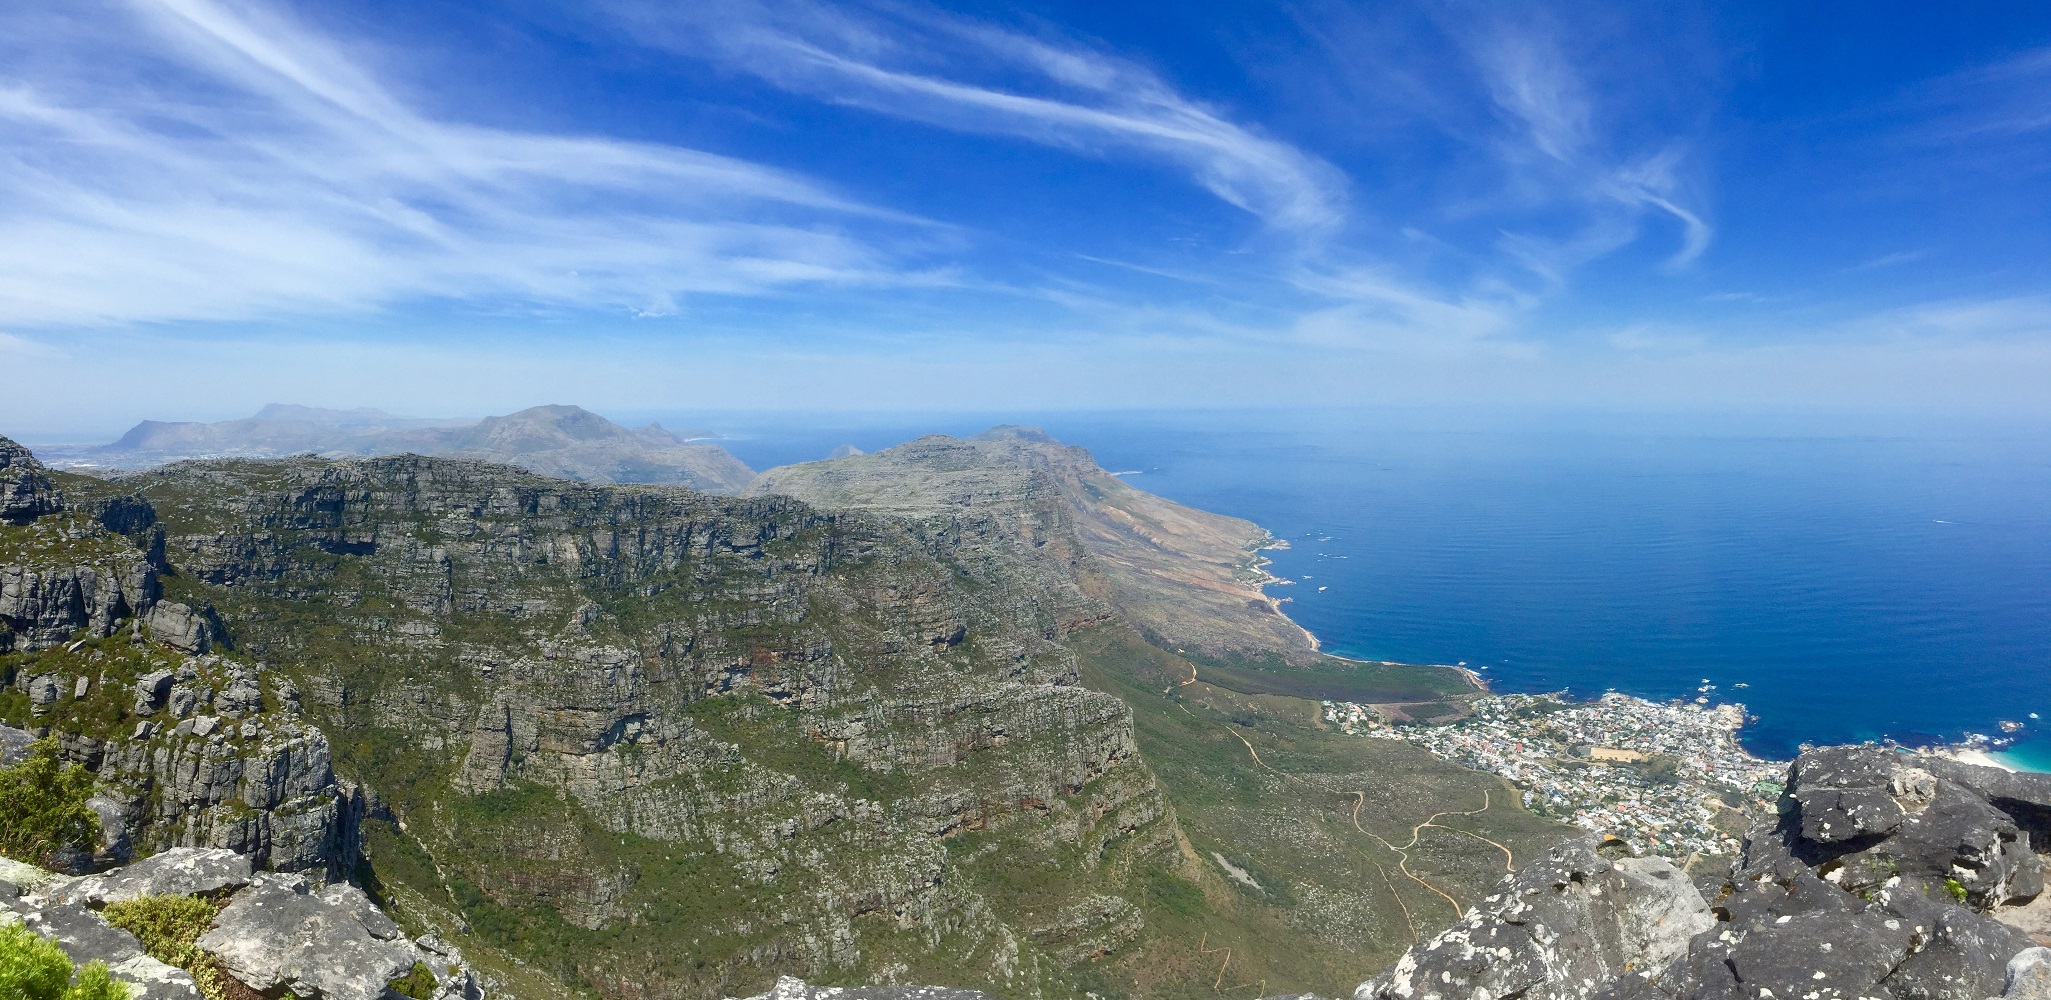 Mein Schiff Ausflug: Ausblick vom Tafelberg in Südafrika